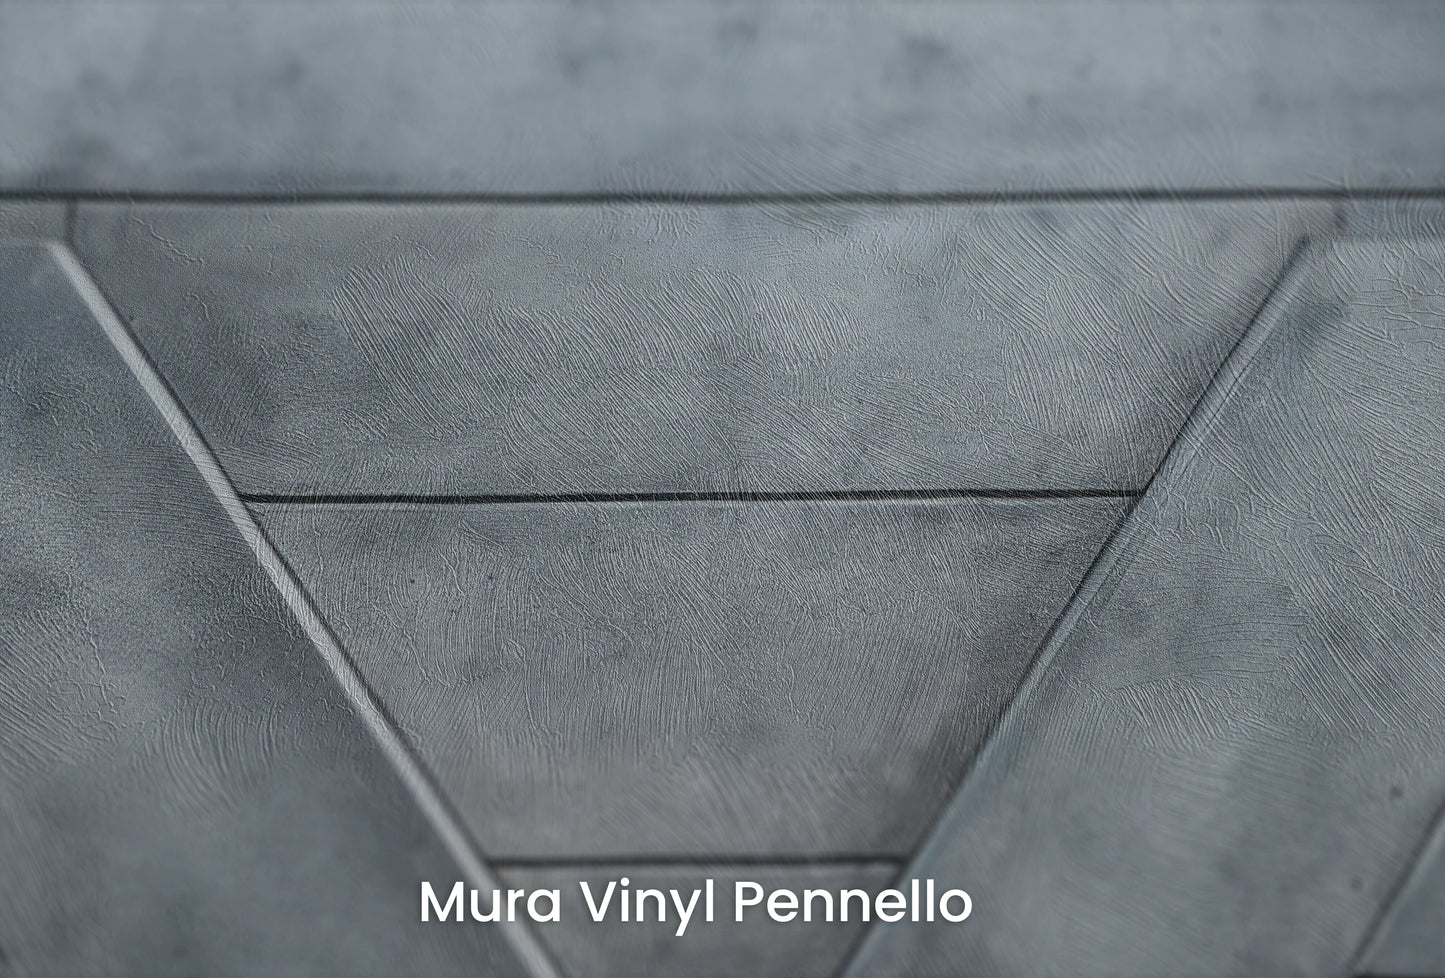 Zbliżenie na artystyczną fototapetę o nazwie Vertex Vision na podłożu Mura Vinyl Pennello - faktura pociągnięć pędzla malarskiego.